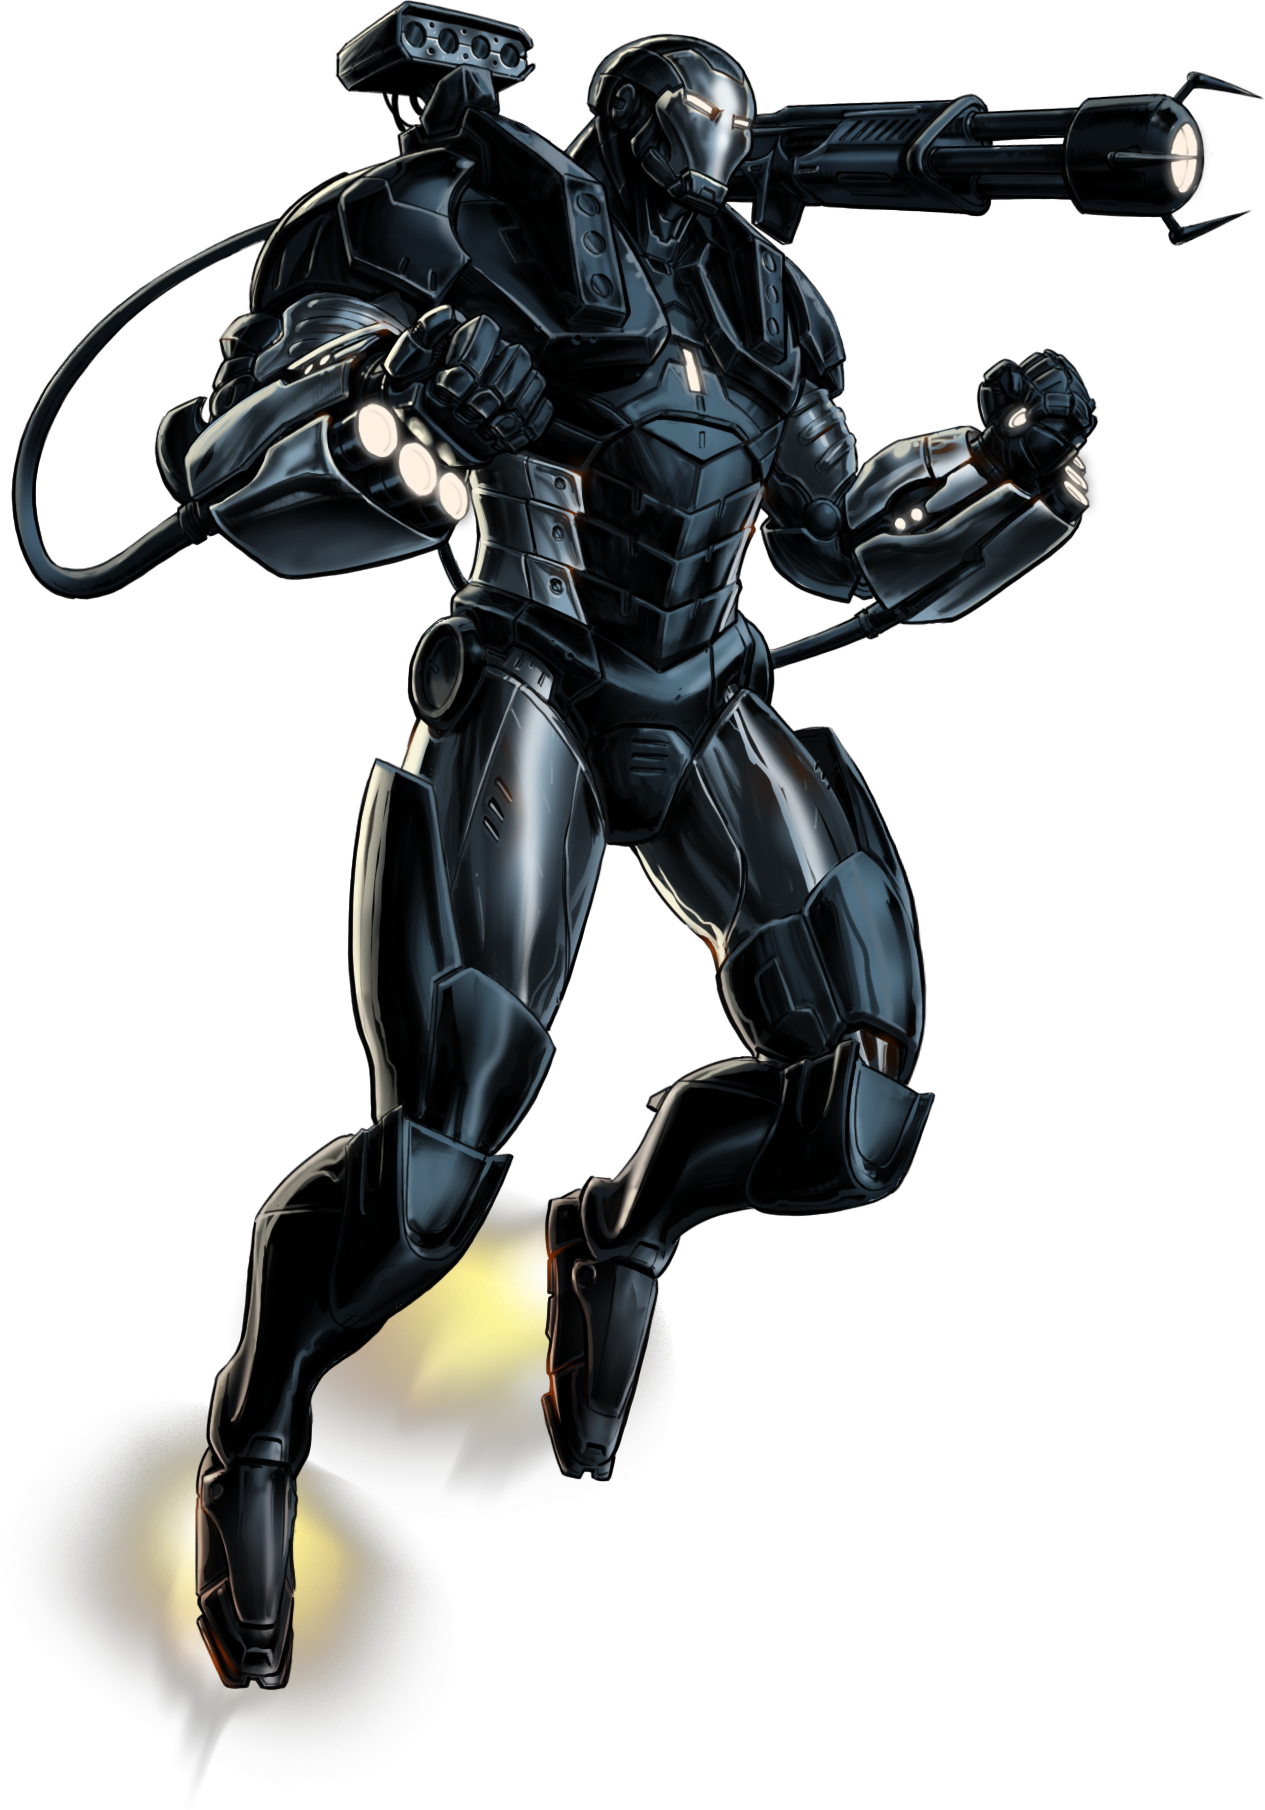 Image War Machine Portrait Artpng Marvel Avengers Alliance Wiki